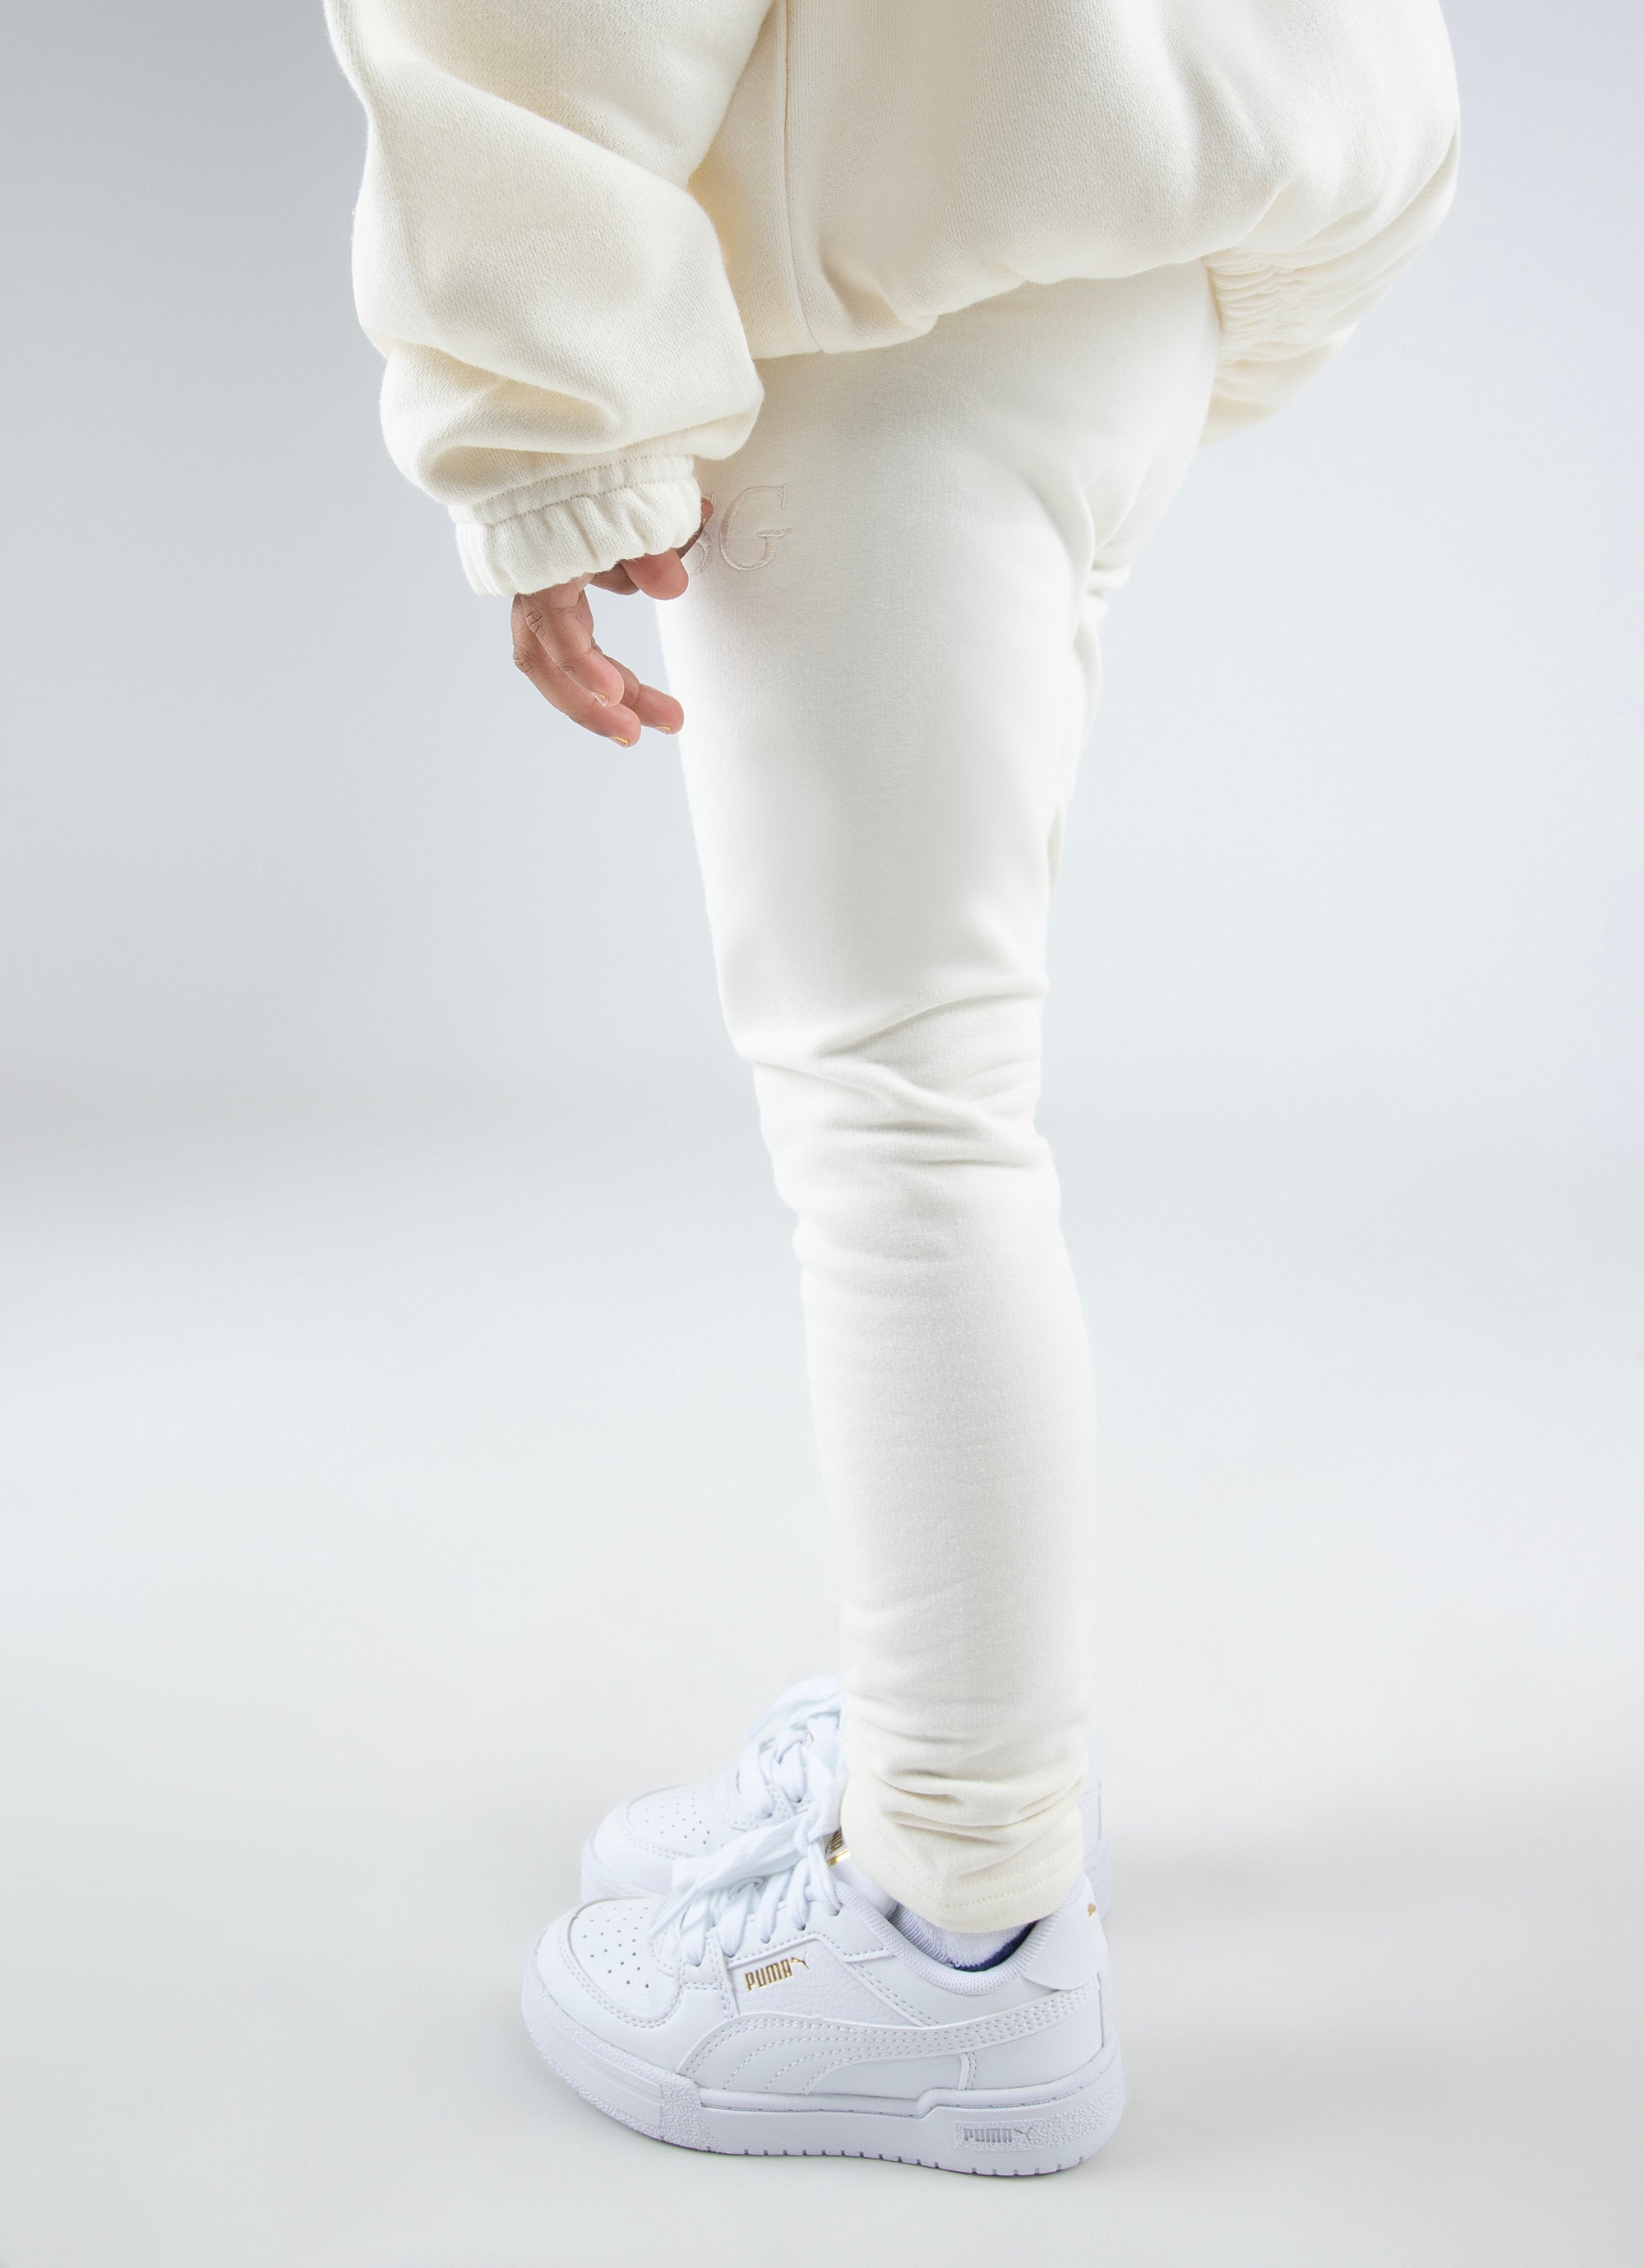 NEW Fleece Lined Leggings Girl size 10 | Girls in leggings, Size girls,  Clothes design